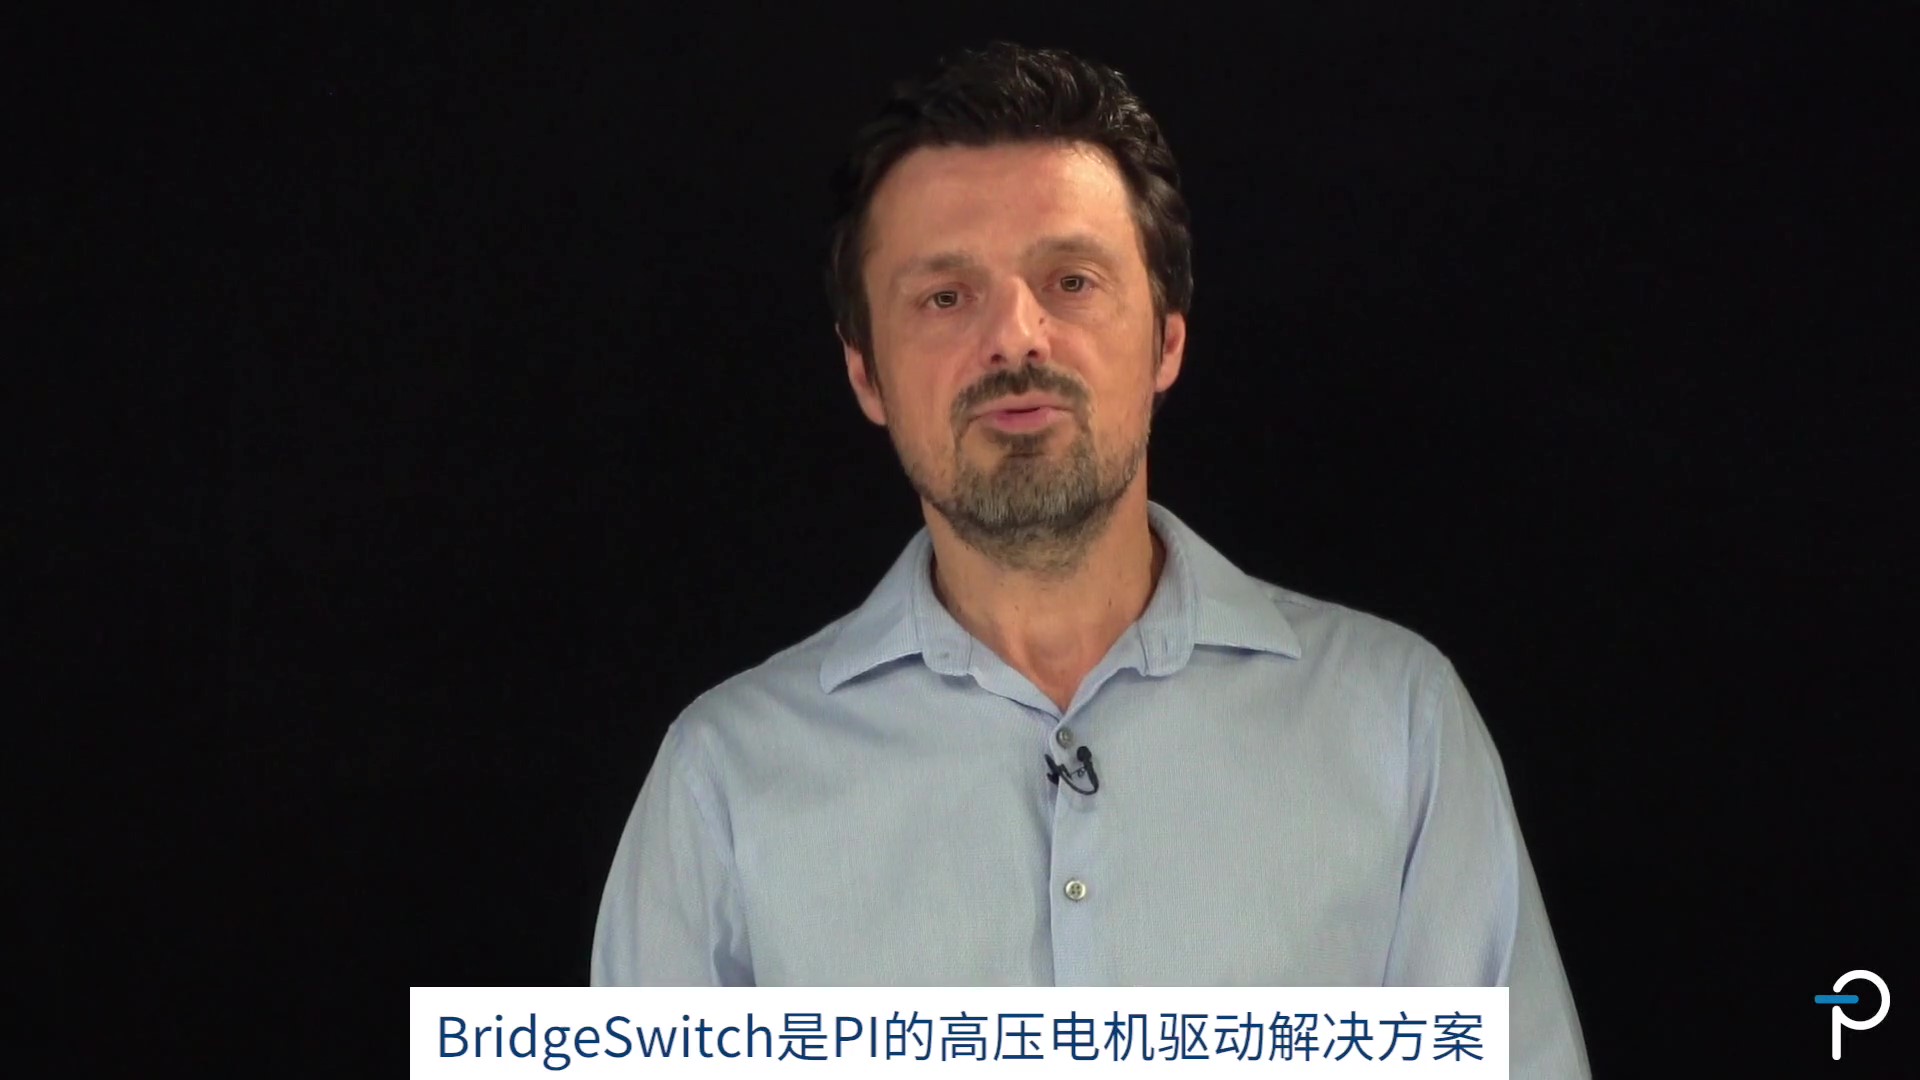 【PI】BridgeSwitch 3-Phase IPH Learning Glass